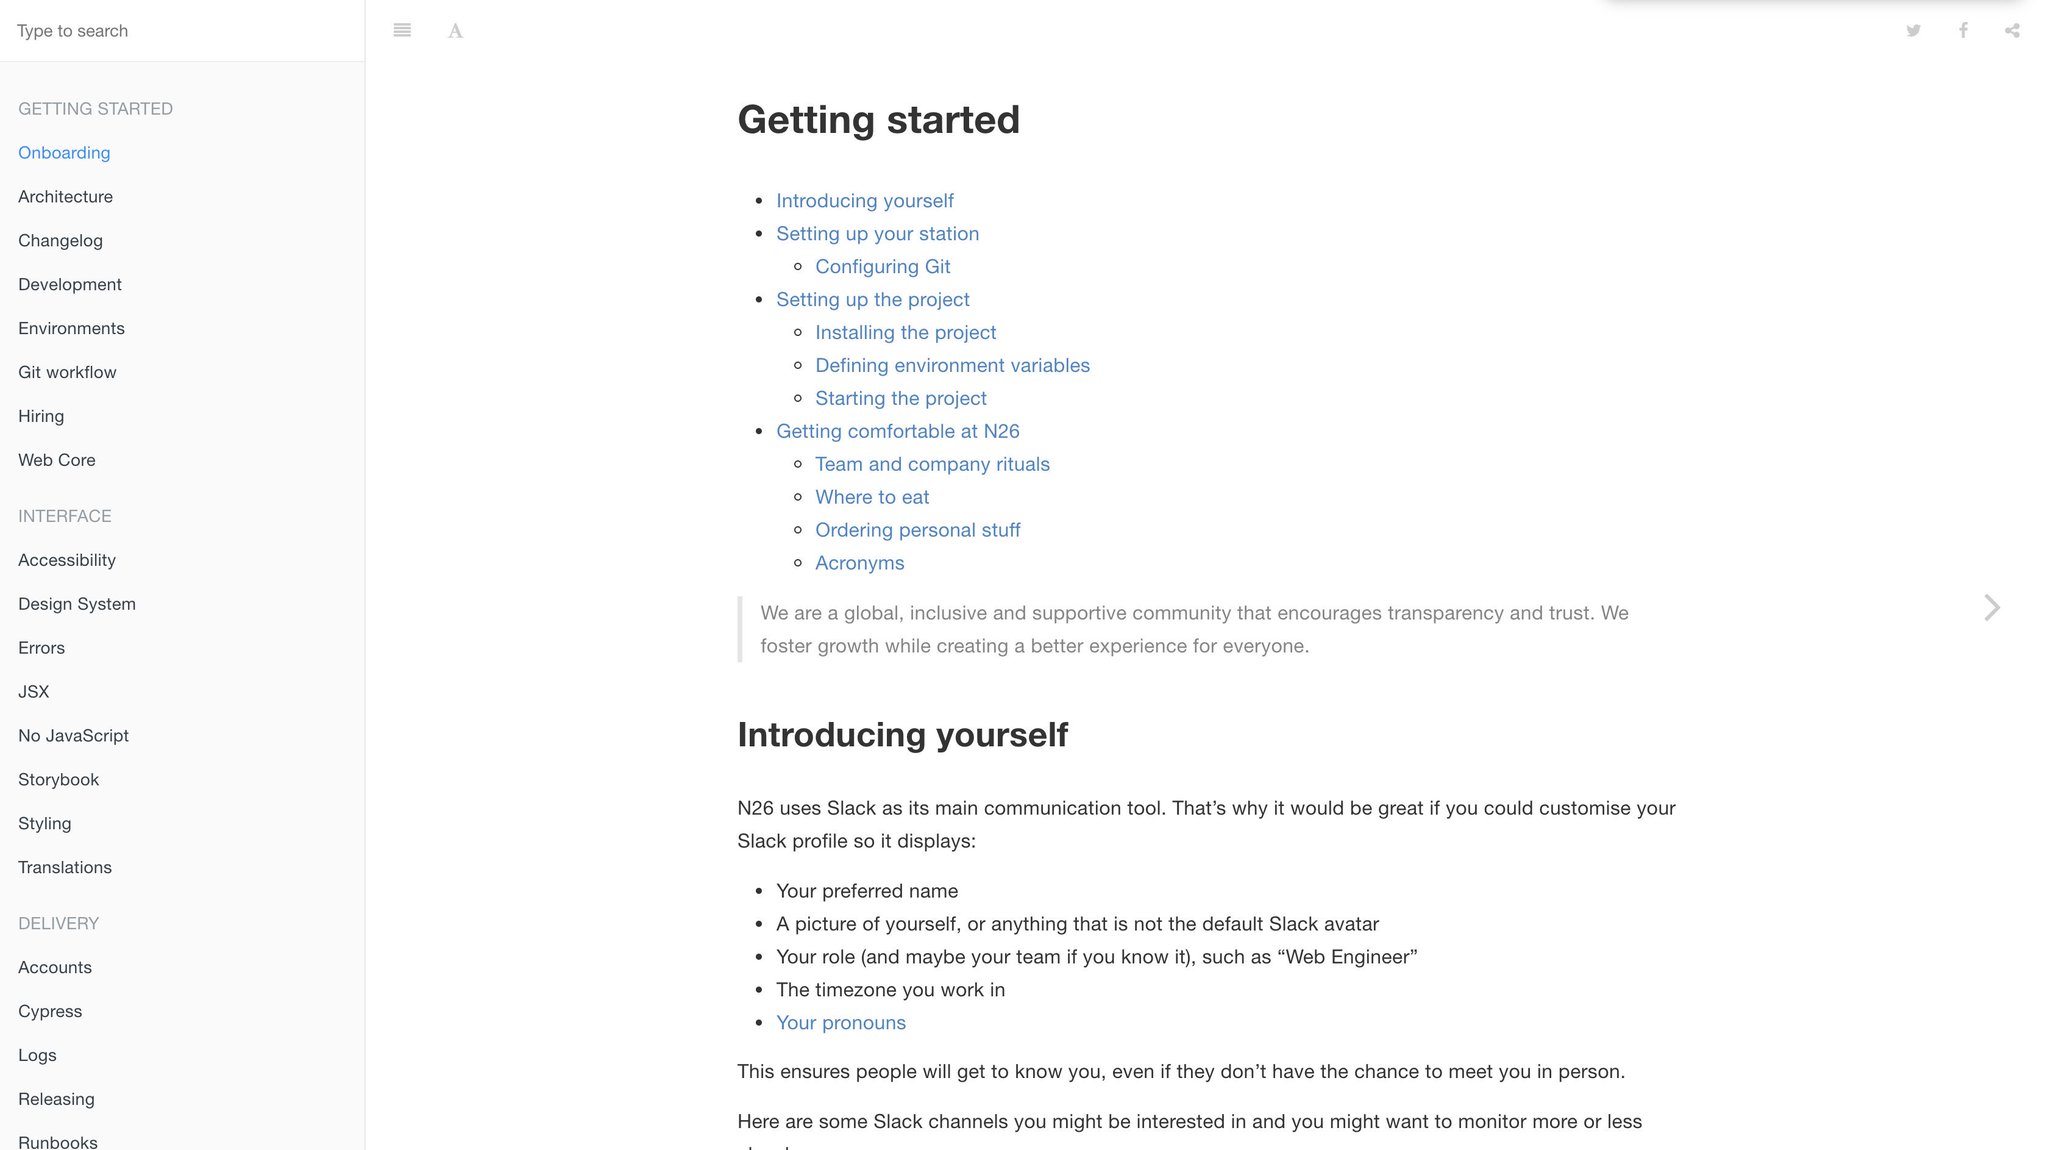 N26 web platform documentation published with GitBook